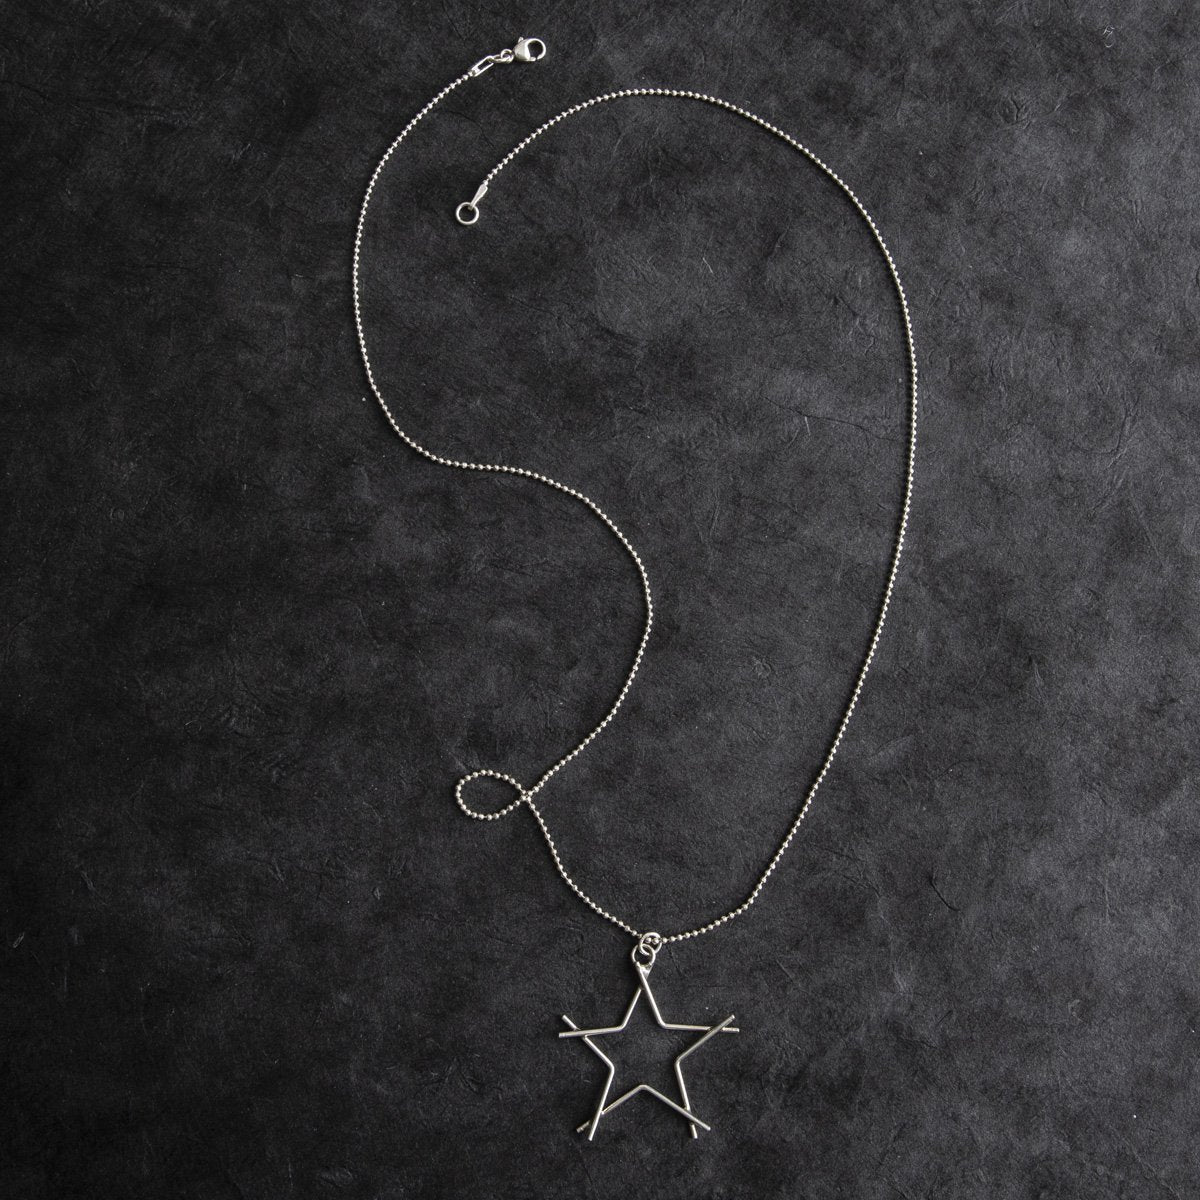 Glass Sky Jewelry - Star Necklace - Sterling Silver Handmade Minimal Jewelry